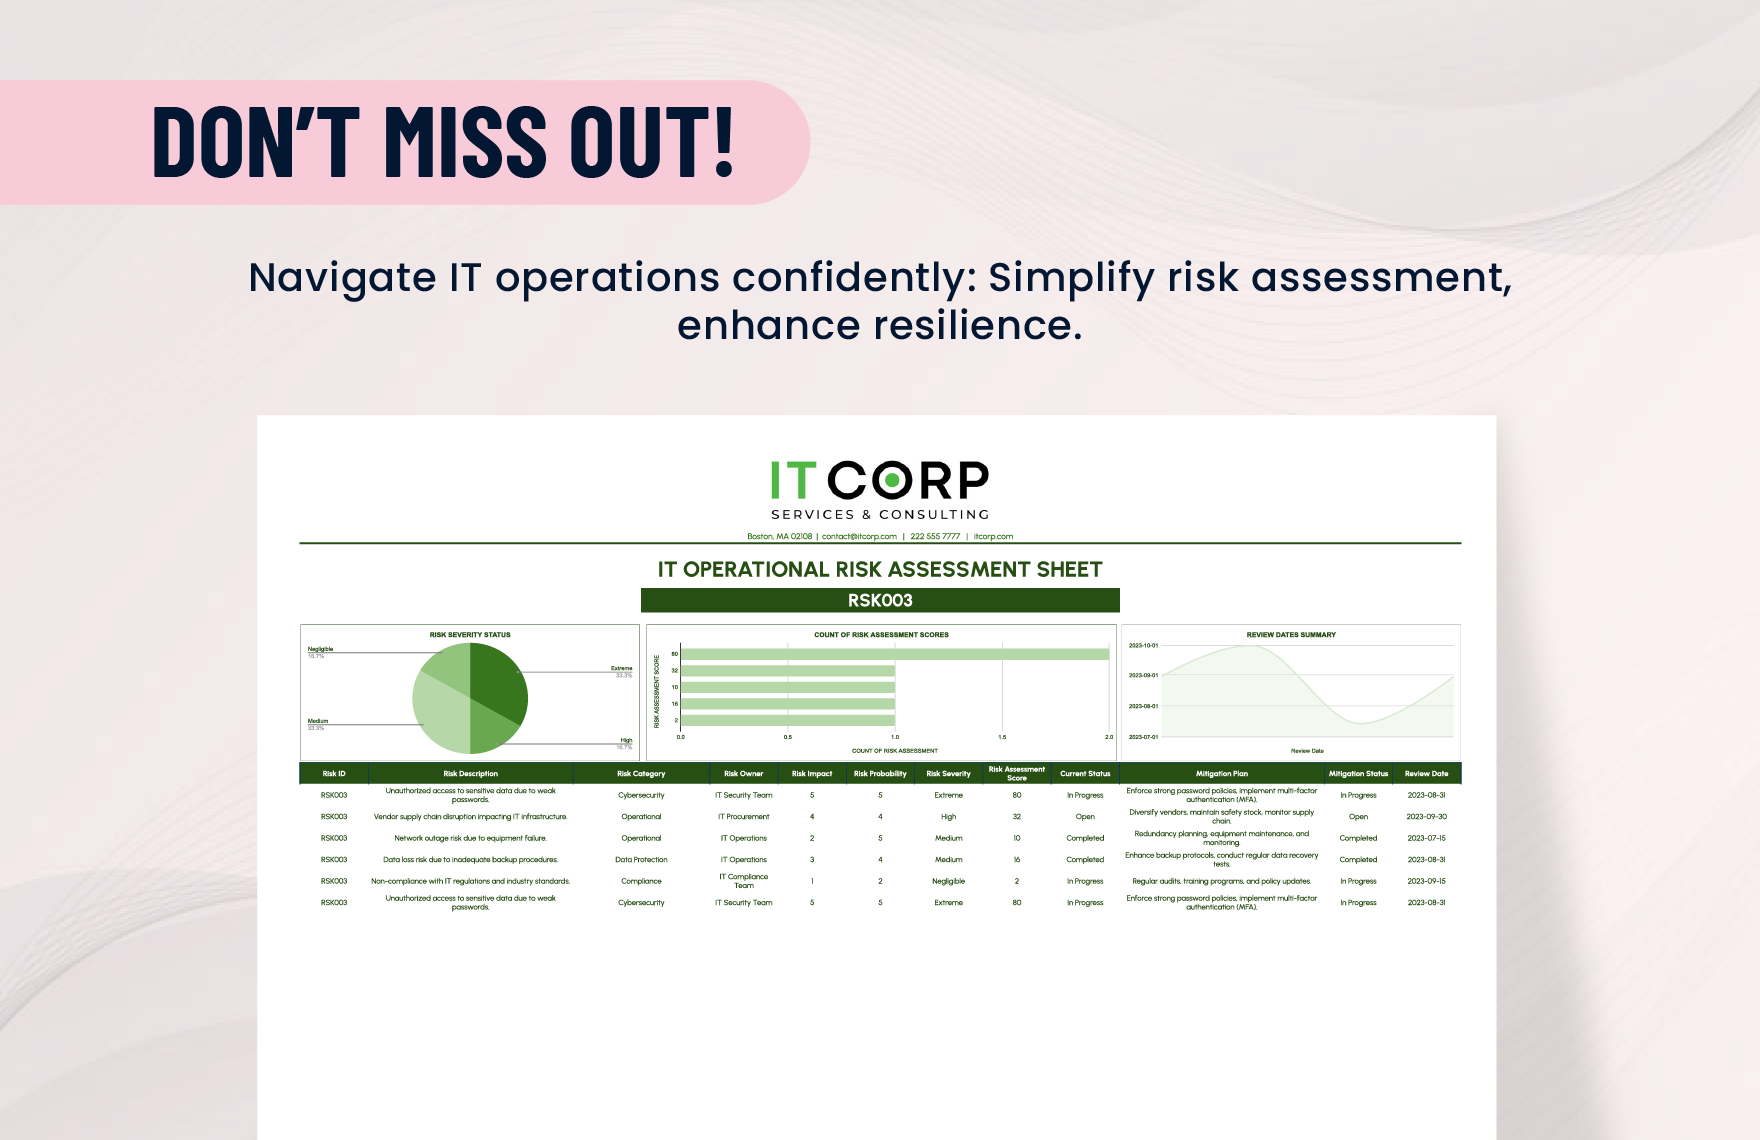 IT Operational Risk Assessment Sheet Template